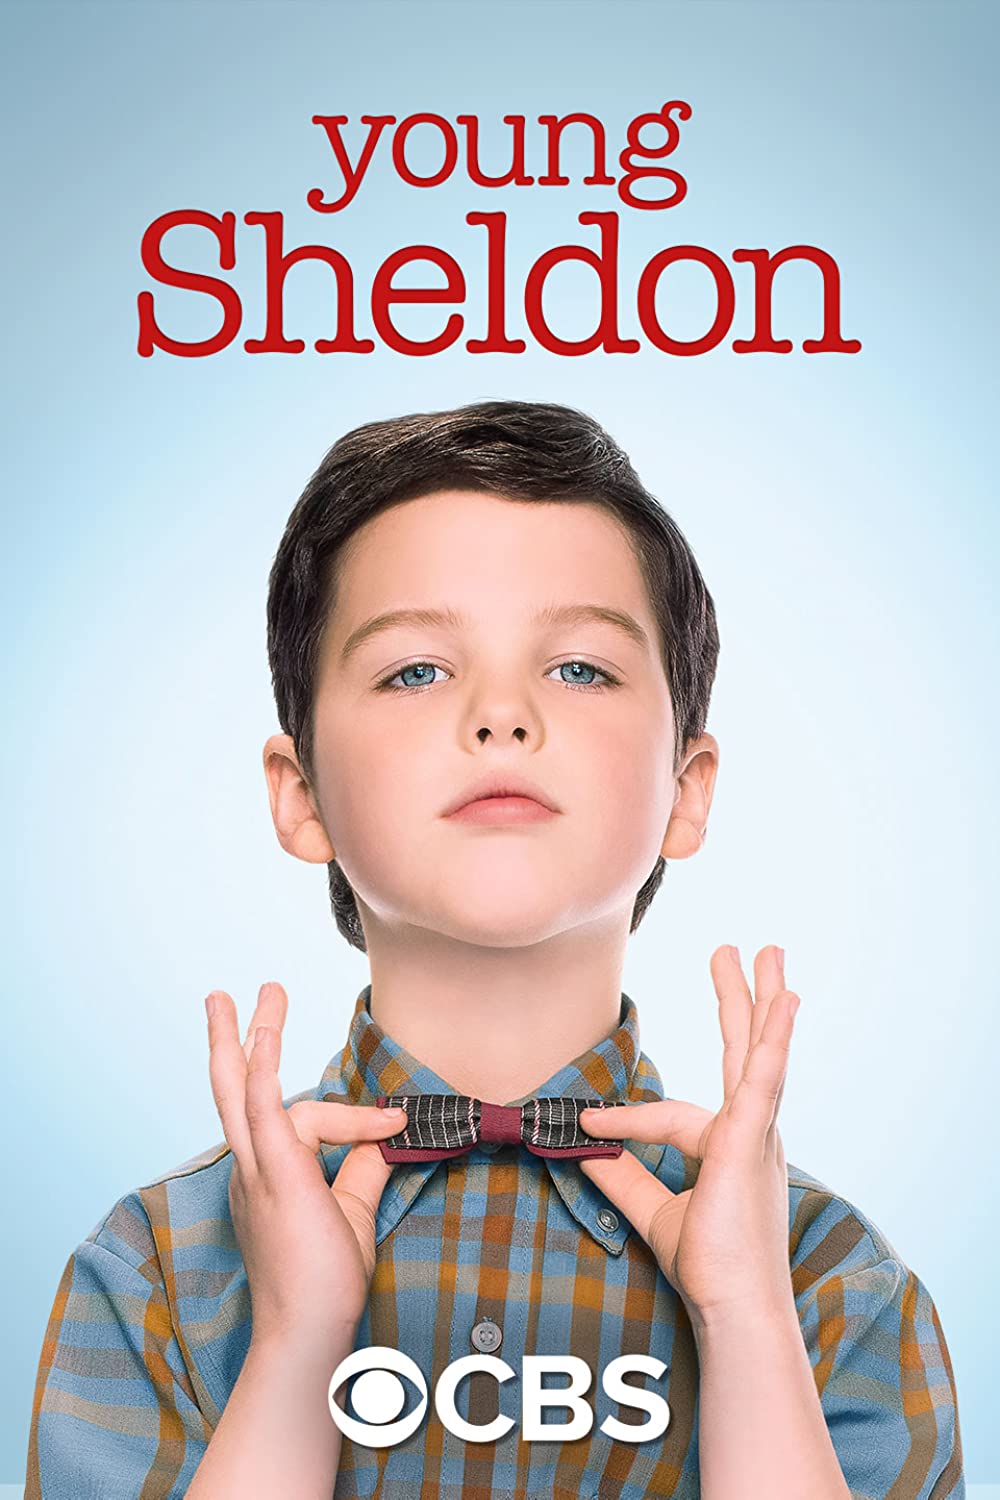 Young Sheldon - Staffel 3